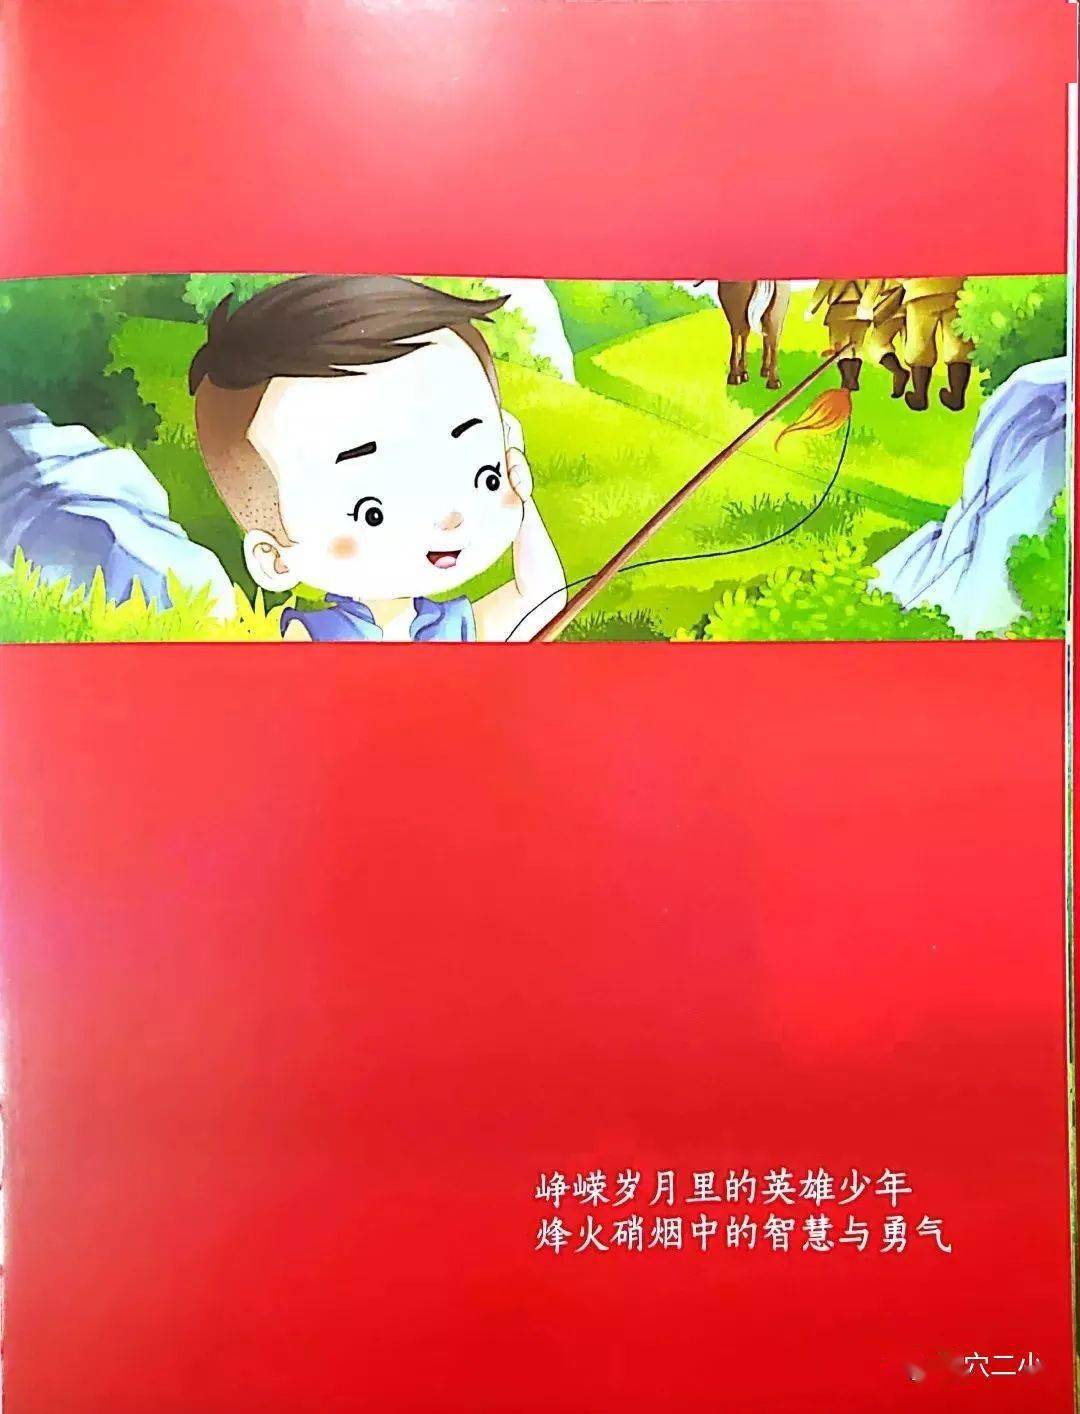 【红色故事听我讲】陈杜雅| 小英雄王二小